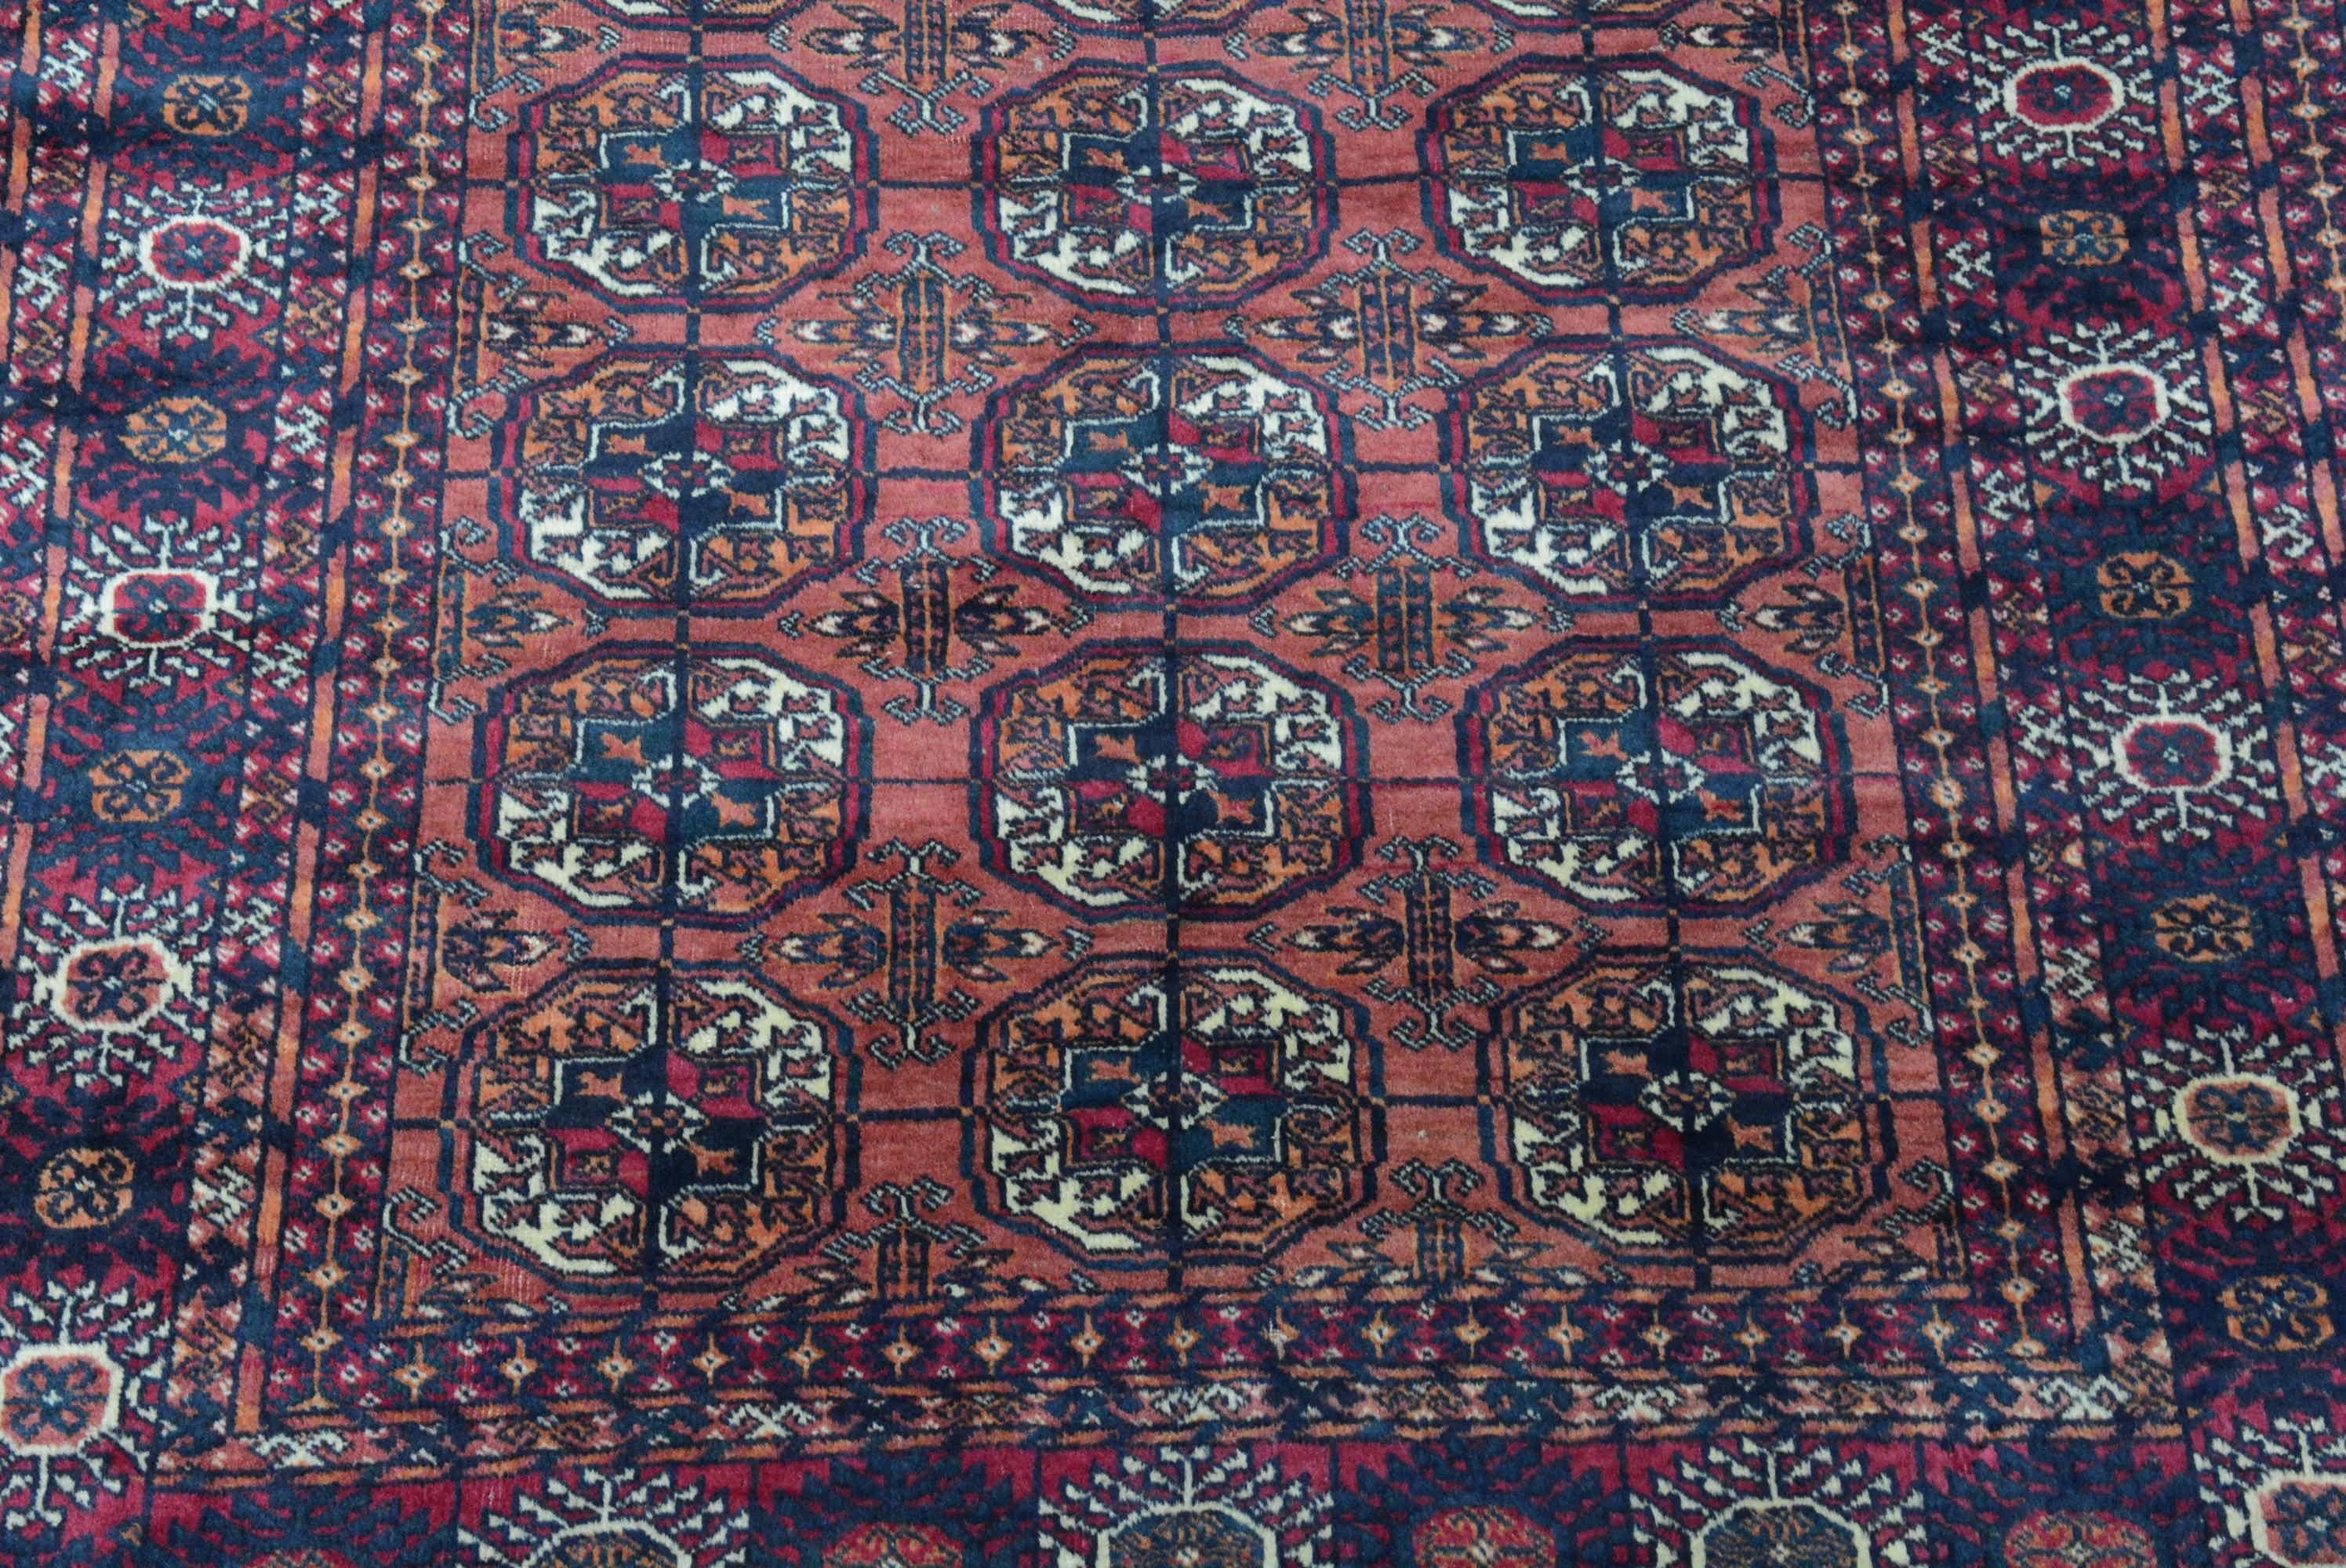 Turkoman Rugs und Teppiche werden in der Region östlich des Kaspischen Meeres gewebt, die als Westturkestan bekannt ist und von Nomadenstämmen bewohnt wird. Das Designelement, das diese Art von Teppich auszeichnet, ist das Gulmedaillon, das in der